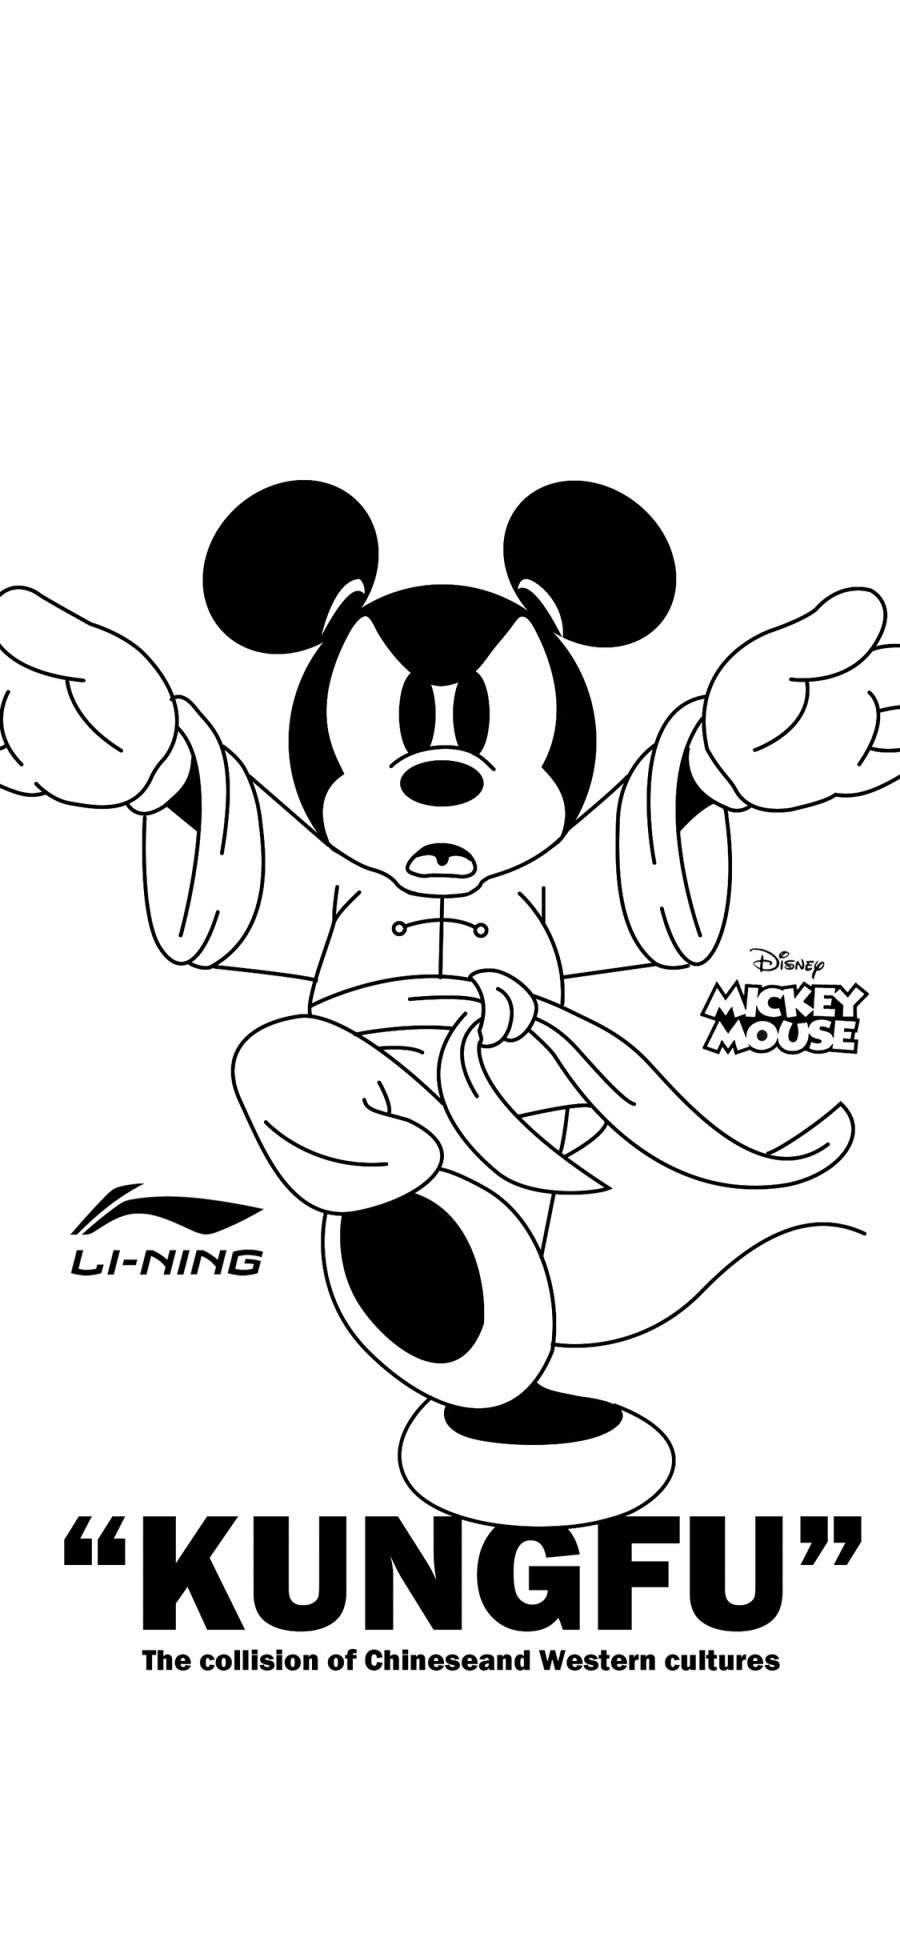 [2436×1125]米老鼠 功夫 李宁 迪士尼 苹果手机动漫壁纸图片